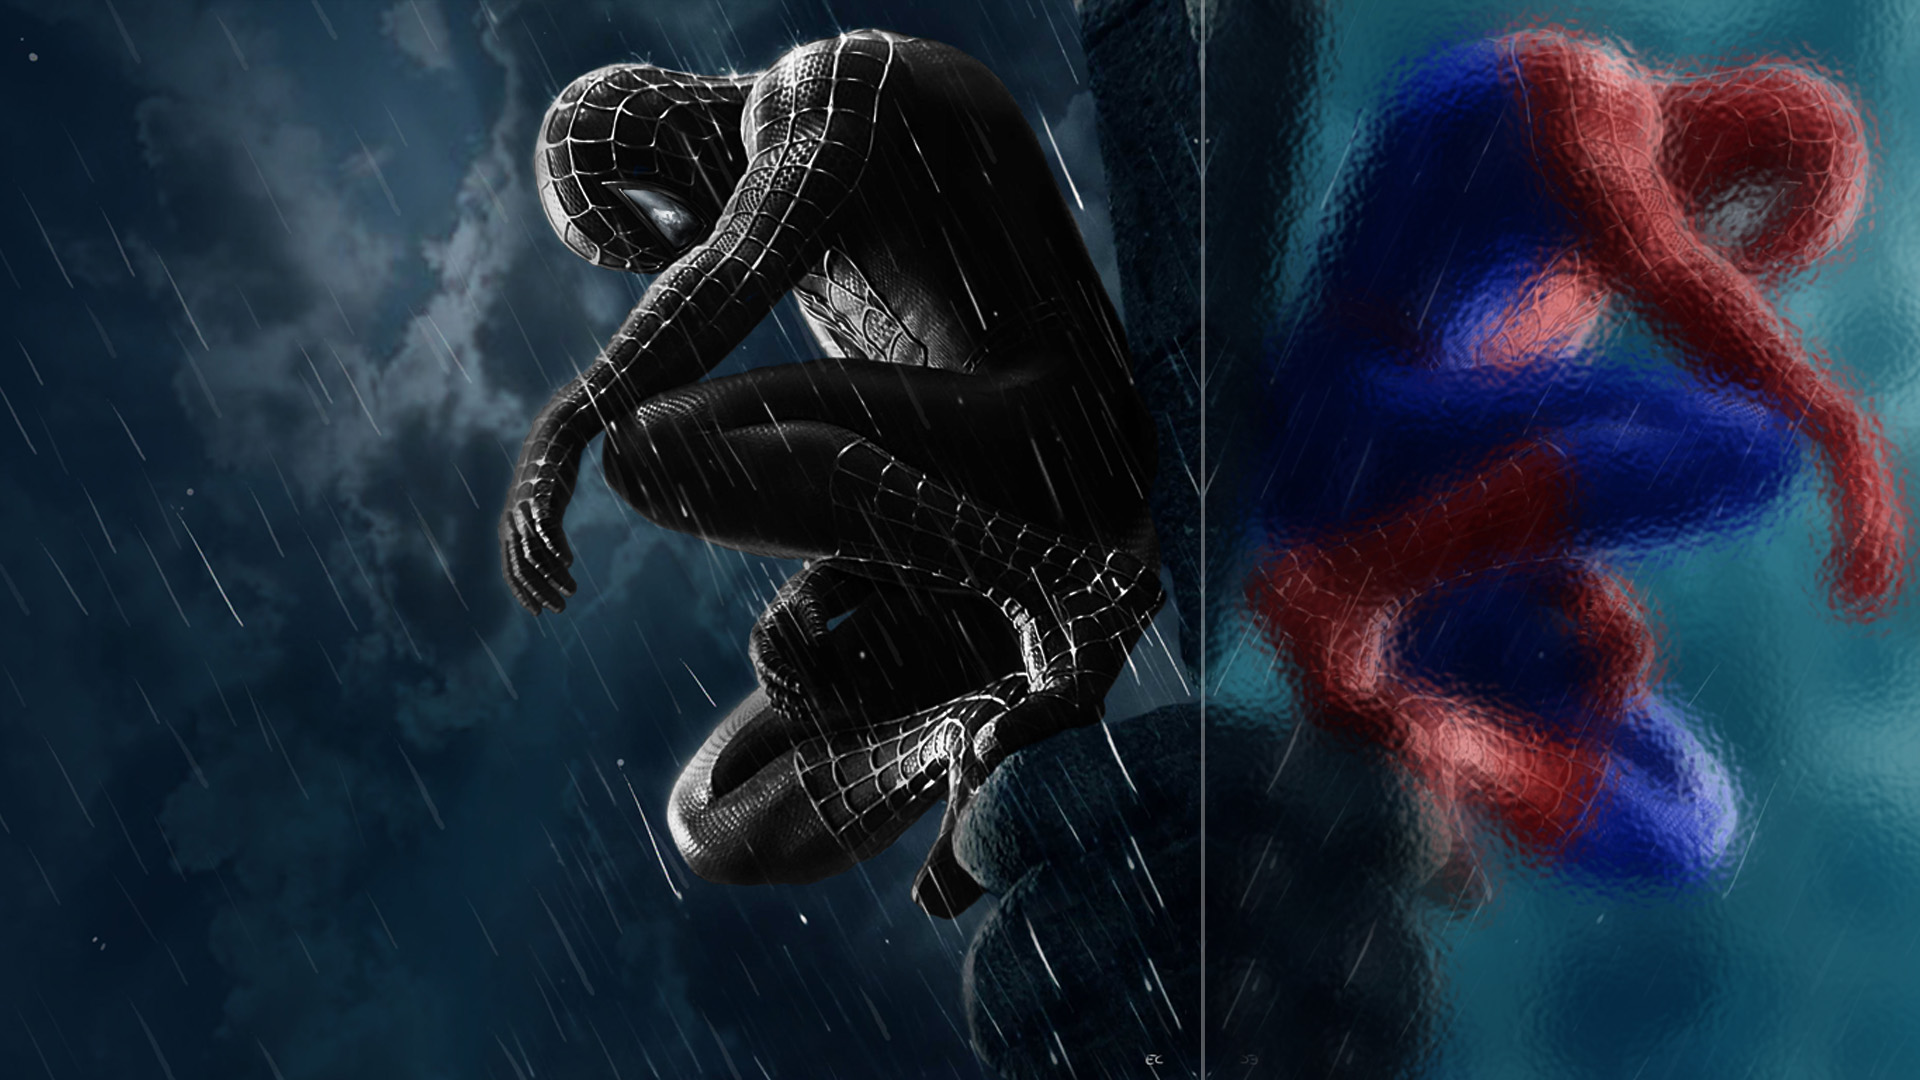 49+] Spiderman 3 Wallpapers - WallpaperSafari